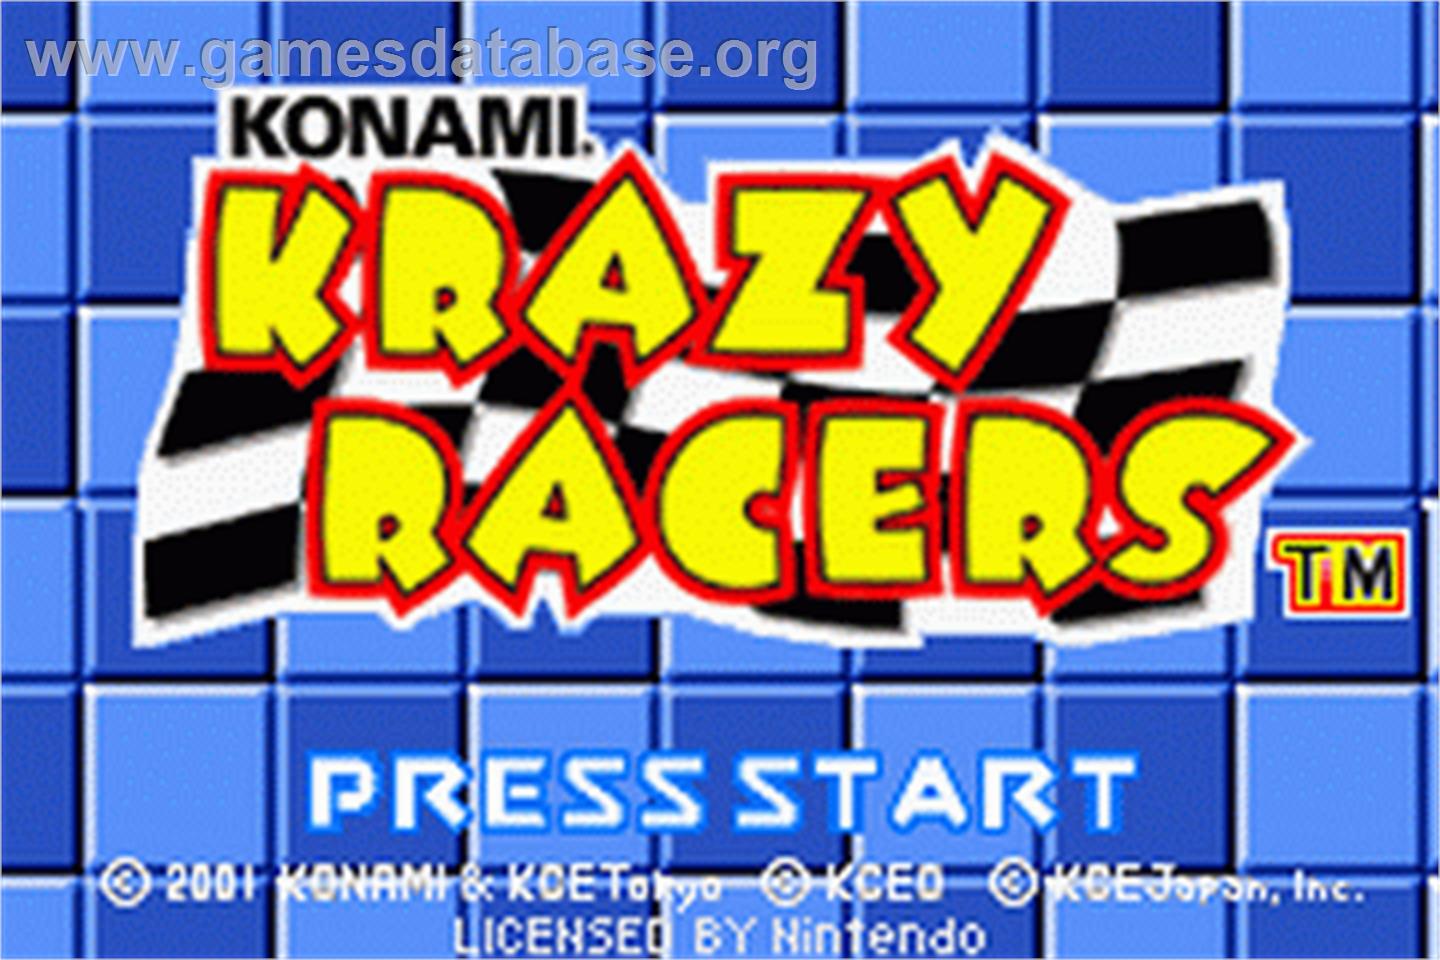 Konami Krazy Racers - Nintendo Game Boy Advance - Artwork - Title Screen